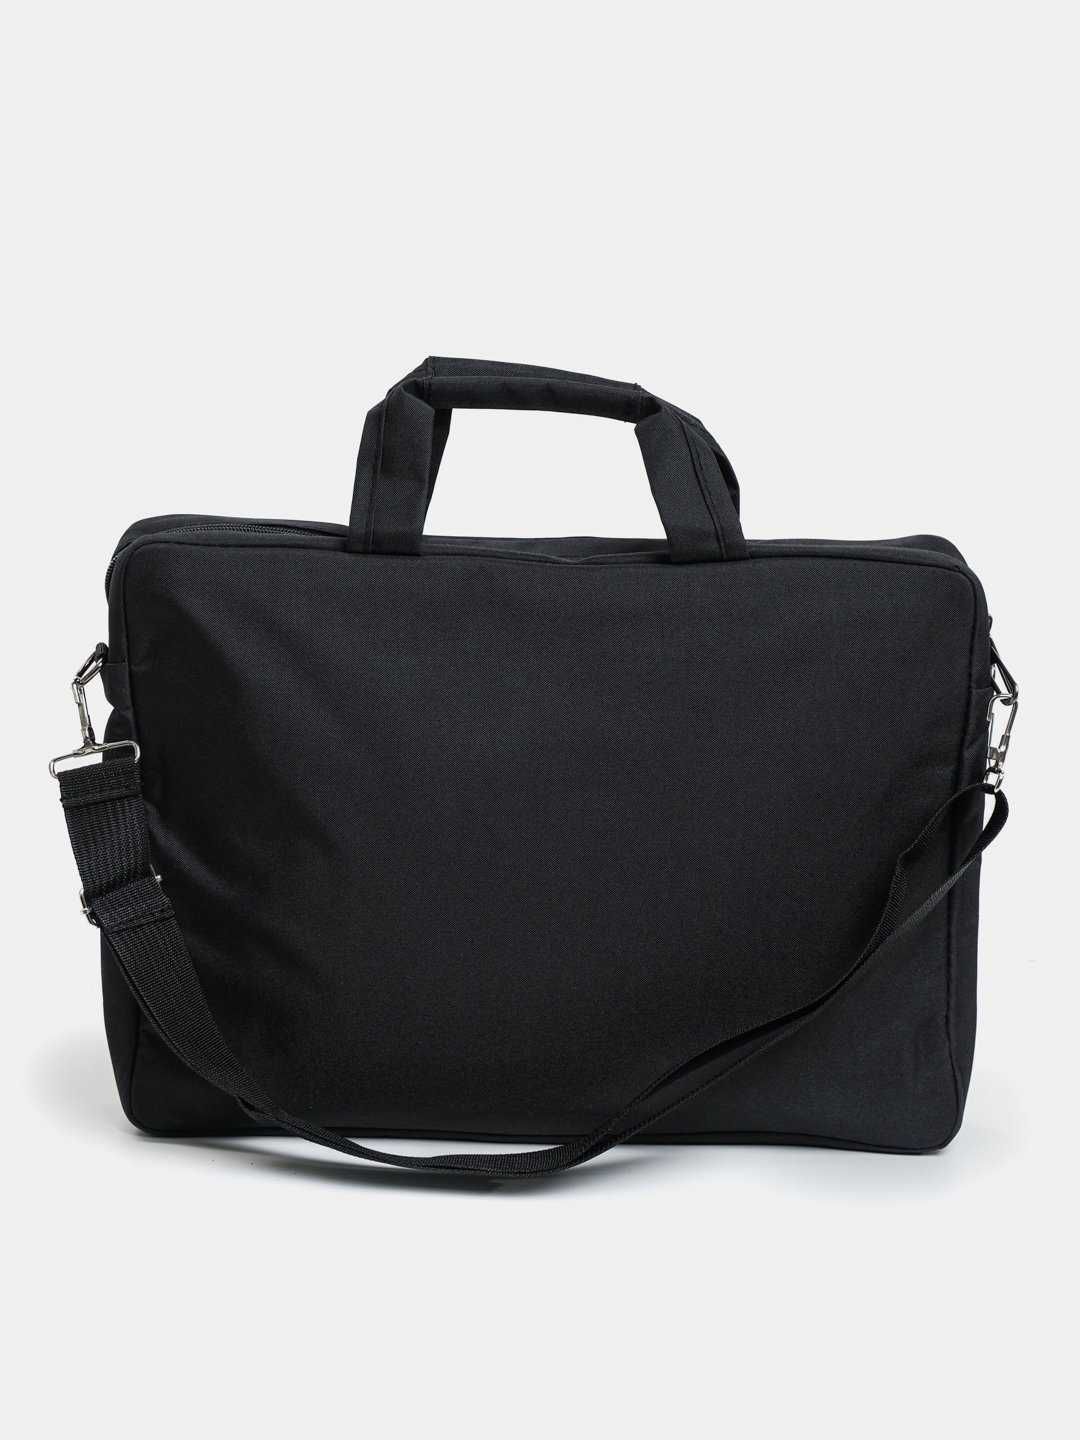 Продаётся новая сумка для ноутбука 15,6" Grey (Серый)